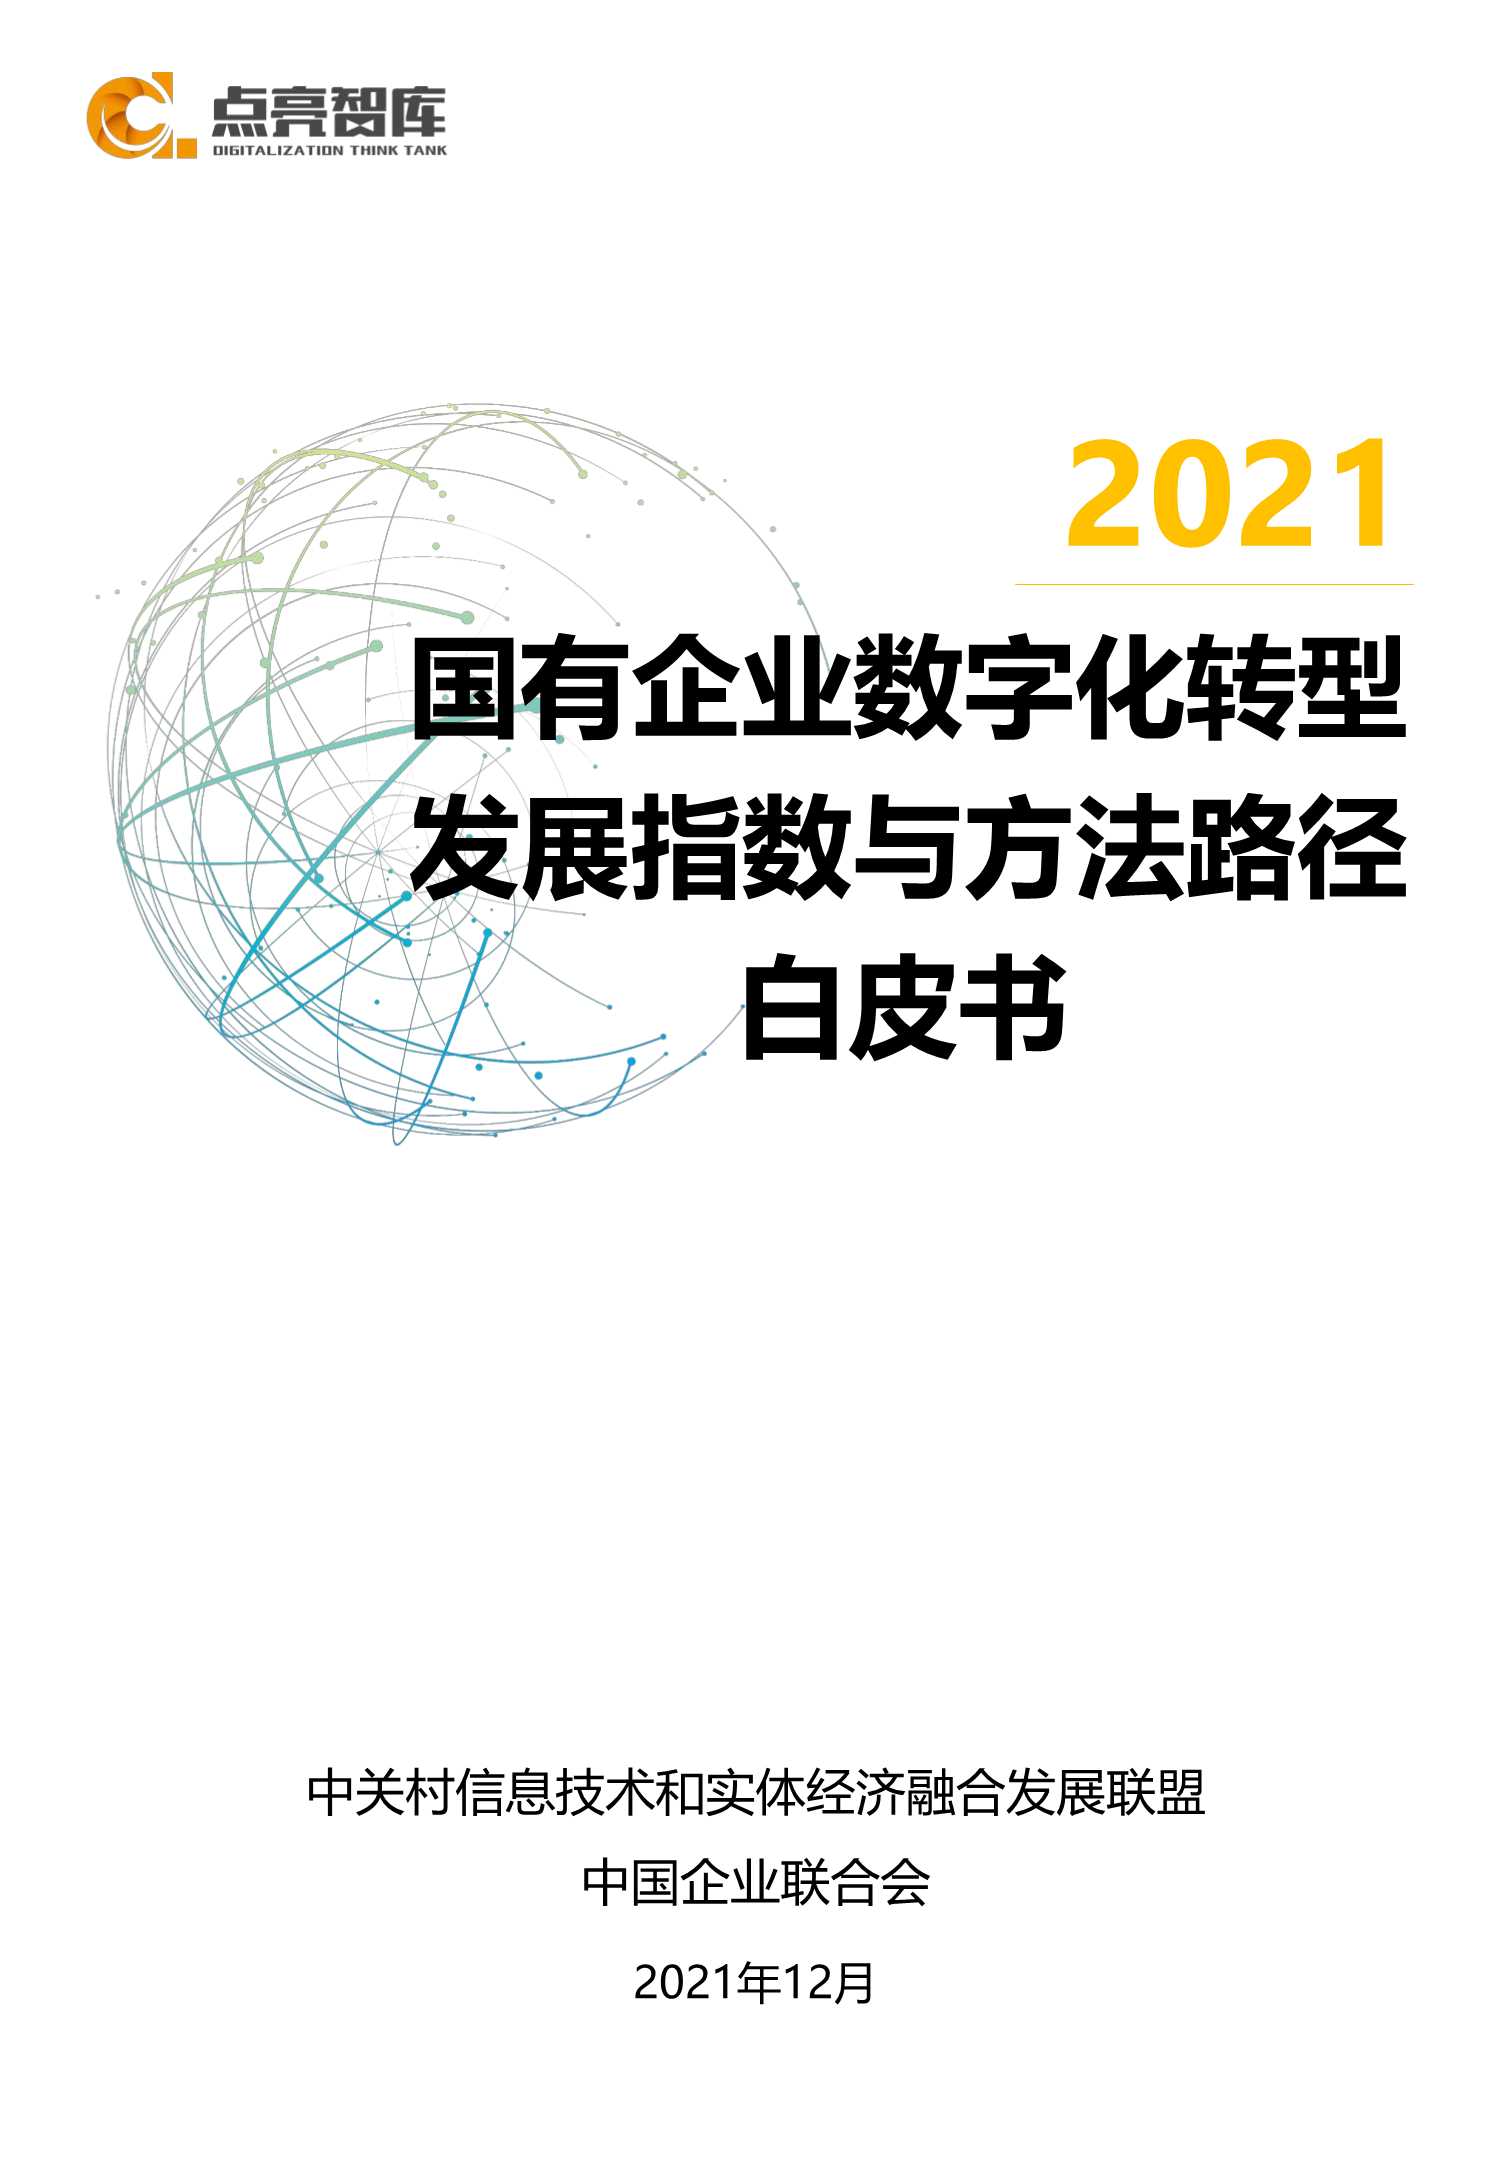 2021年国有企业数字化转型发展指数与方法路径白皮书